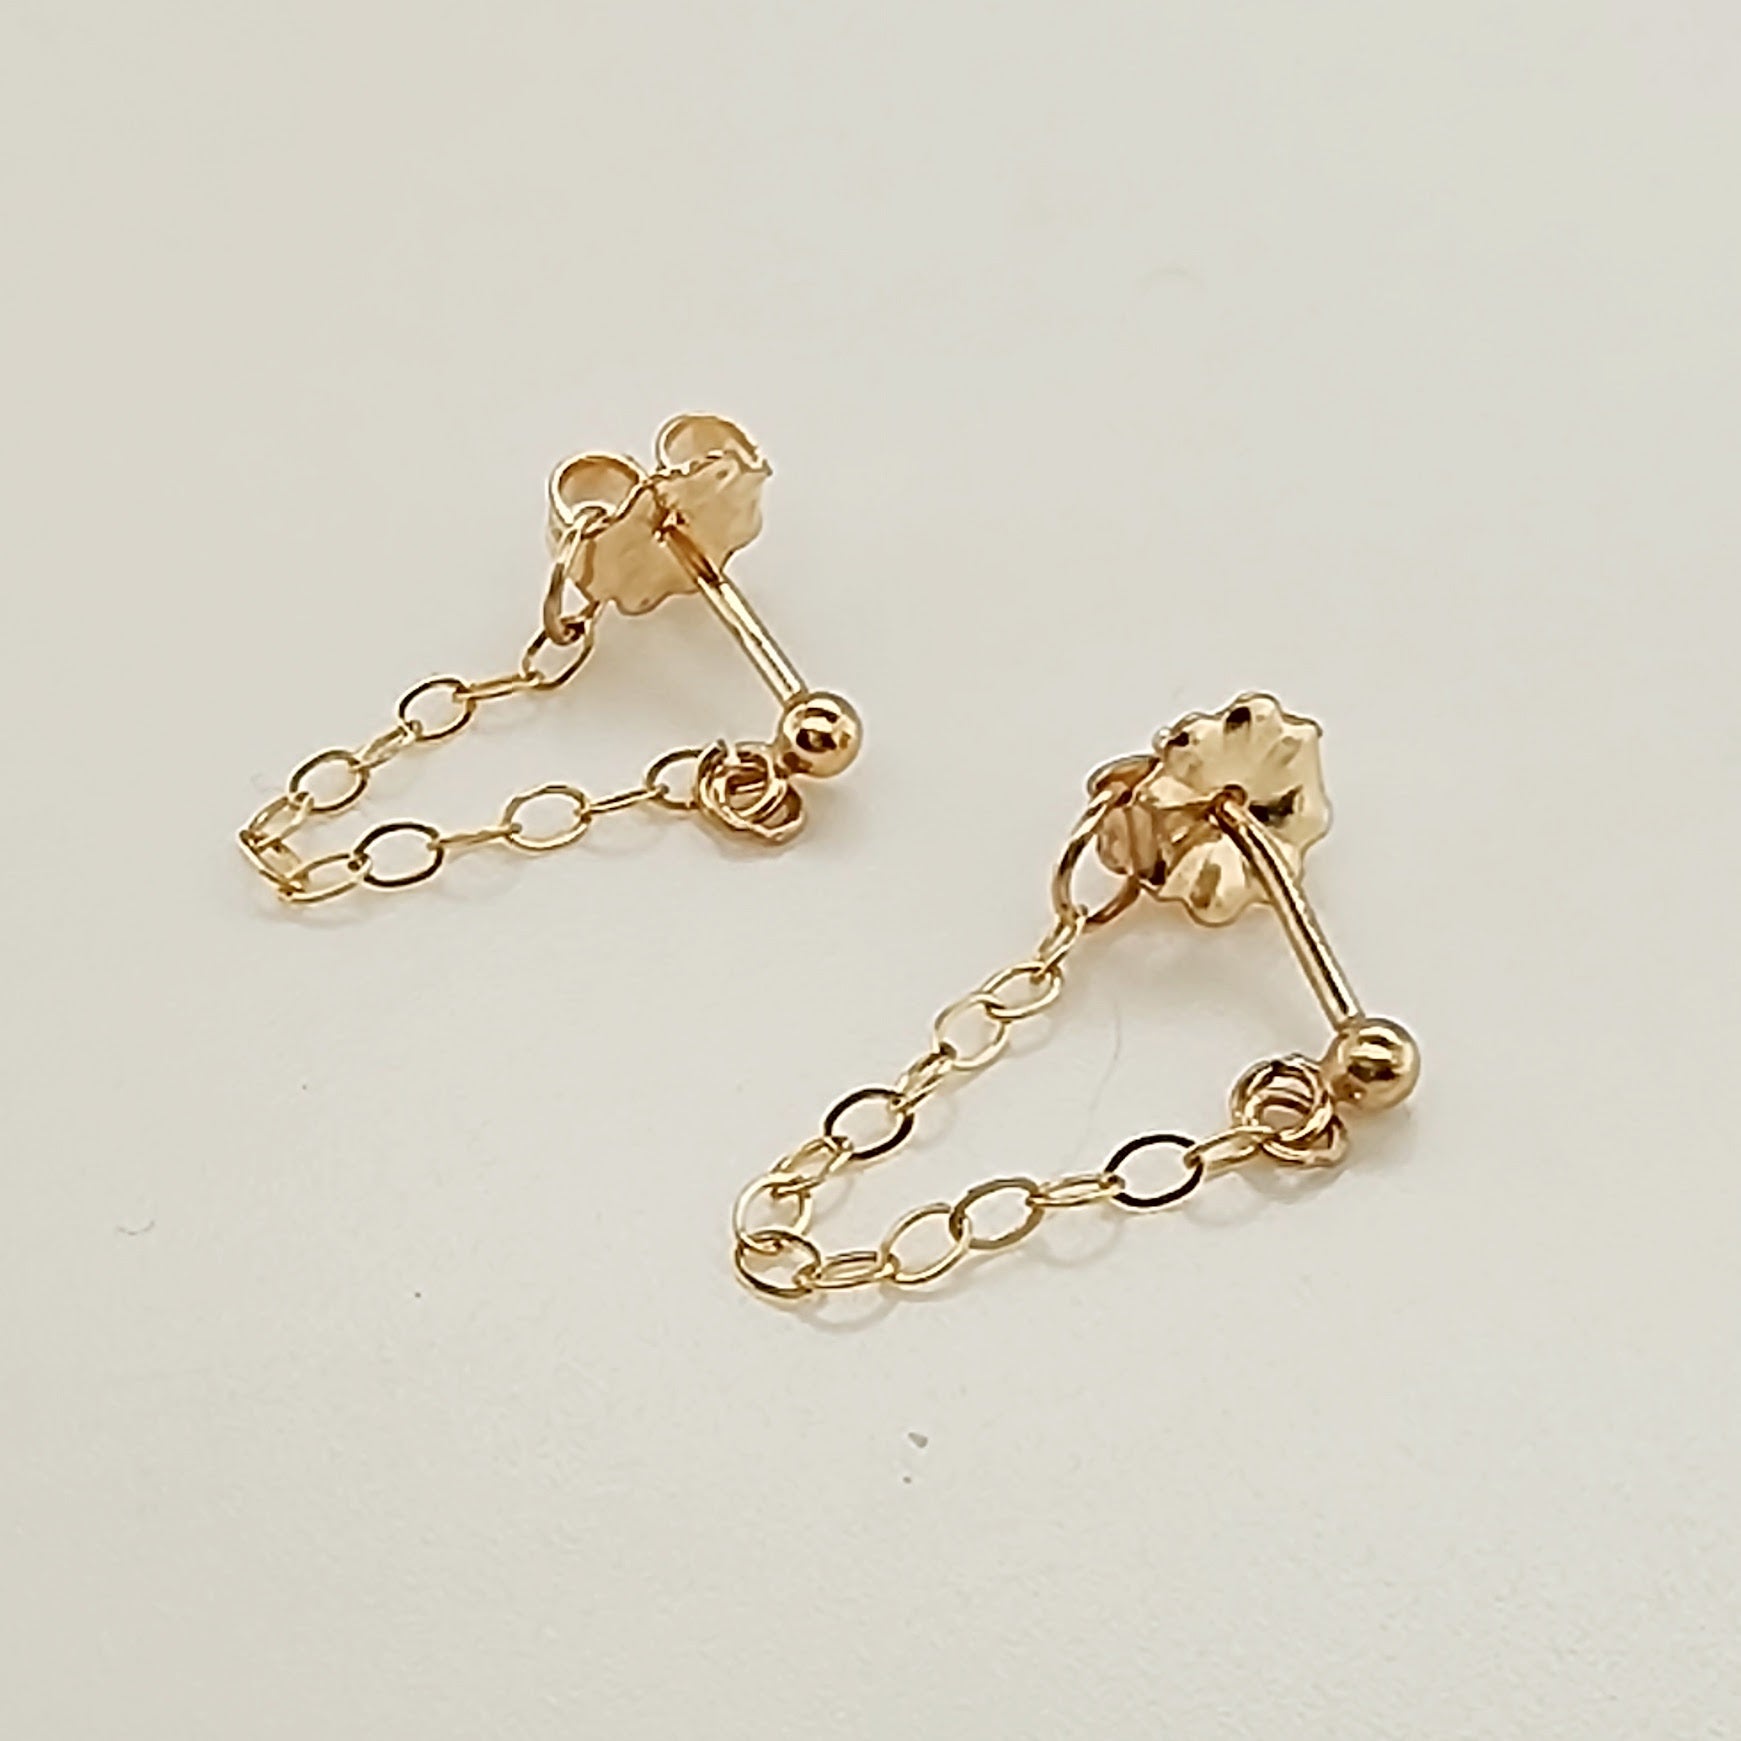 Chain Earrings - Going Golden